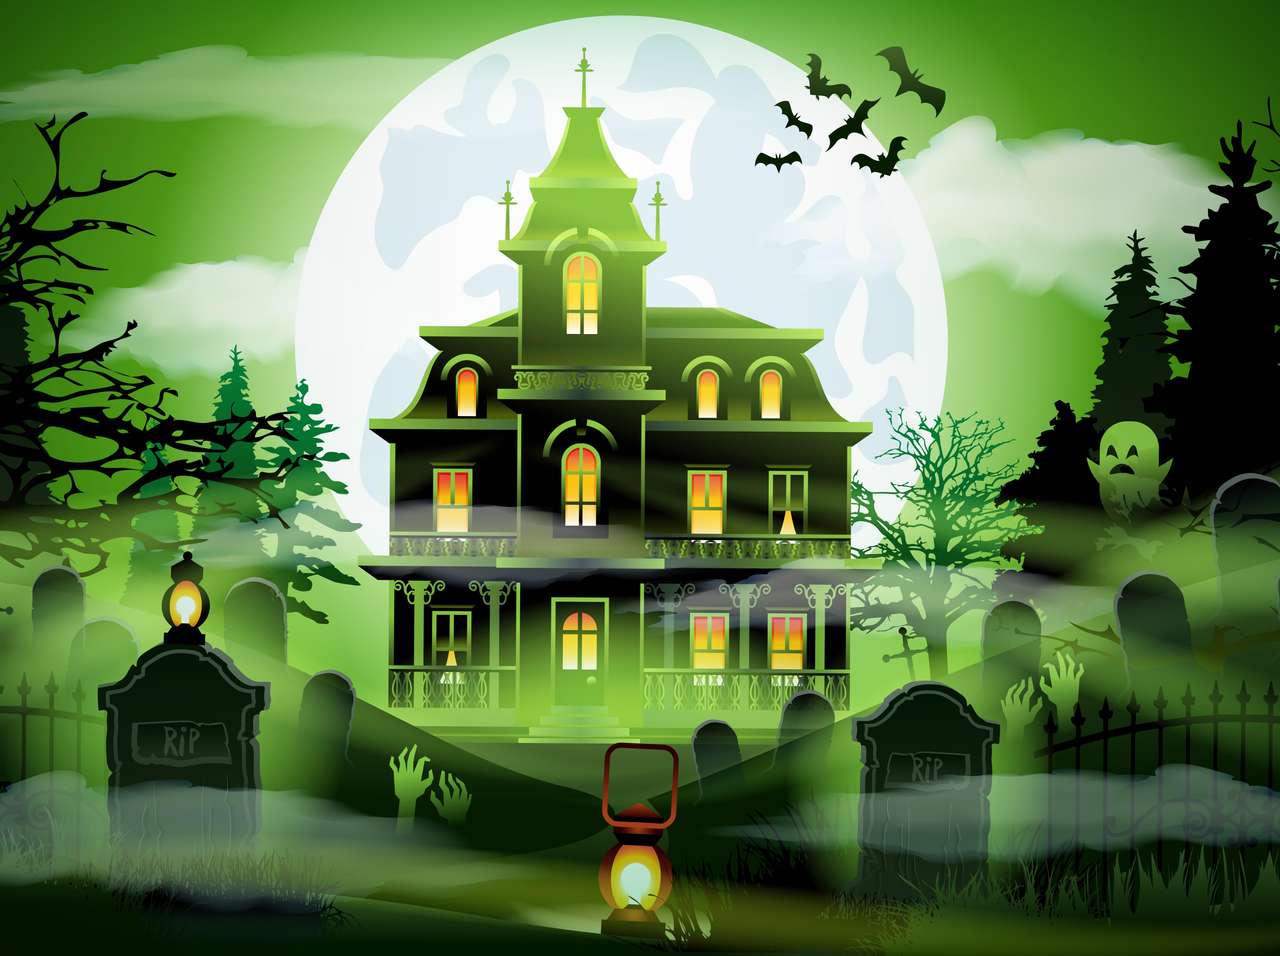 Haunted House Fun puzzel online van foto